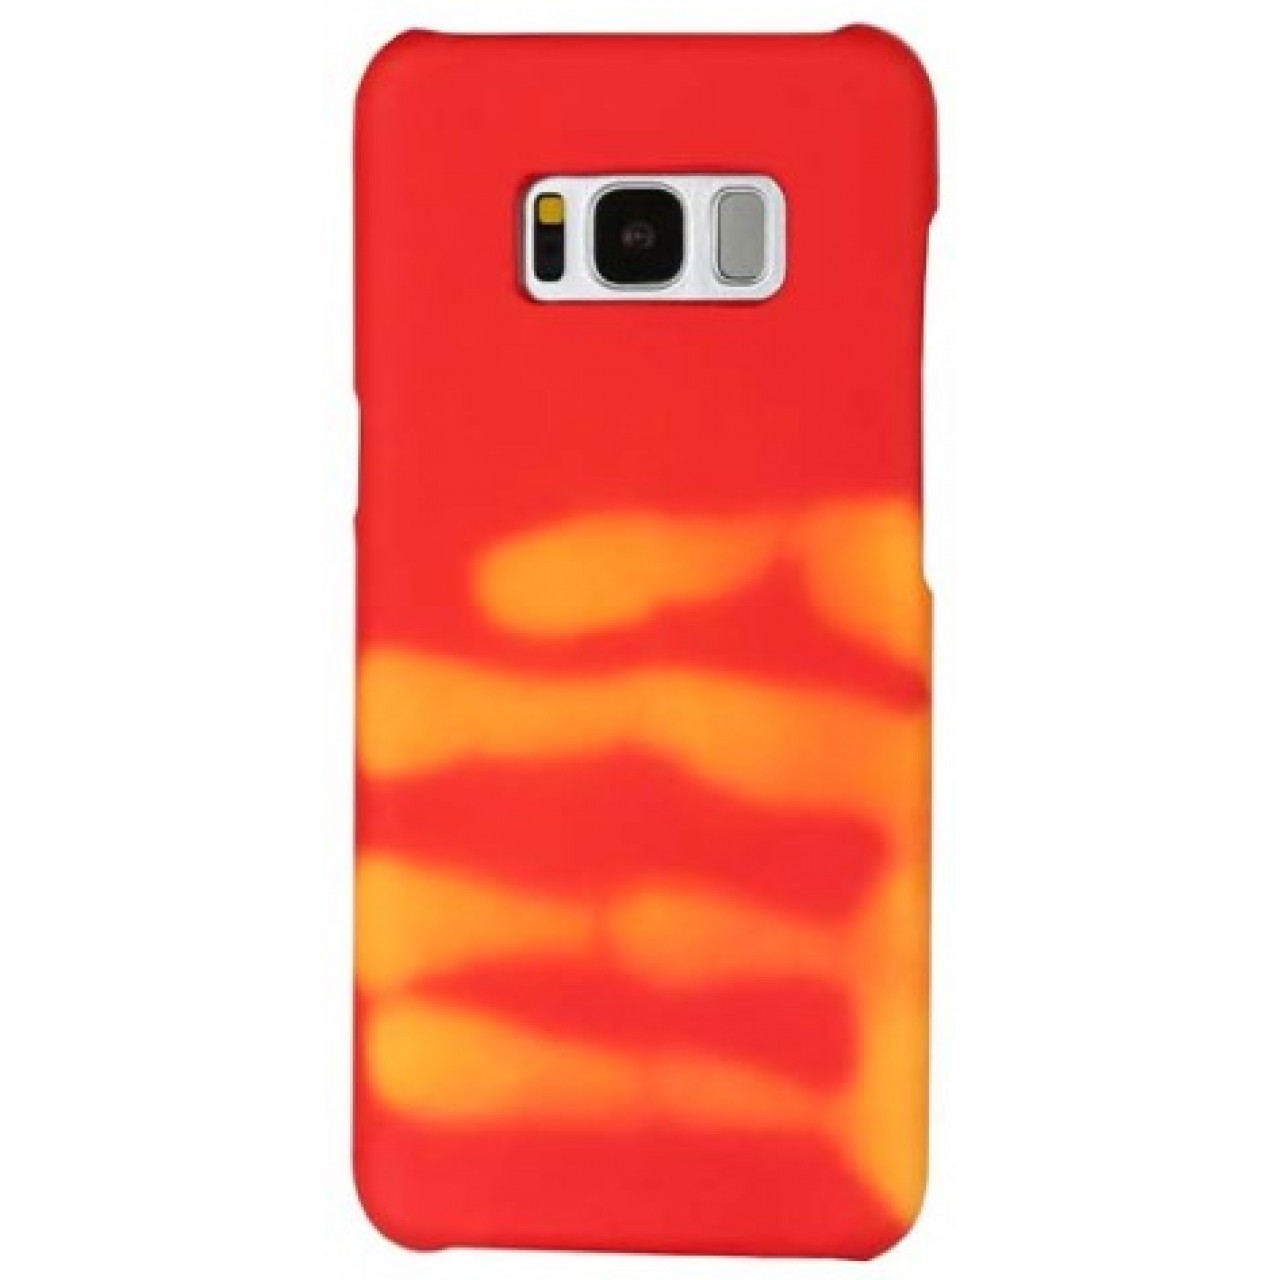 Θήκη Samsung Galaxy S8 (G950) Σκληρή που αλλάζει χρώμα με την θερμότητα - 3565 - Κόκκινο - OEM